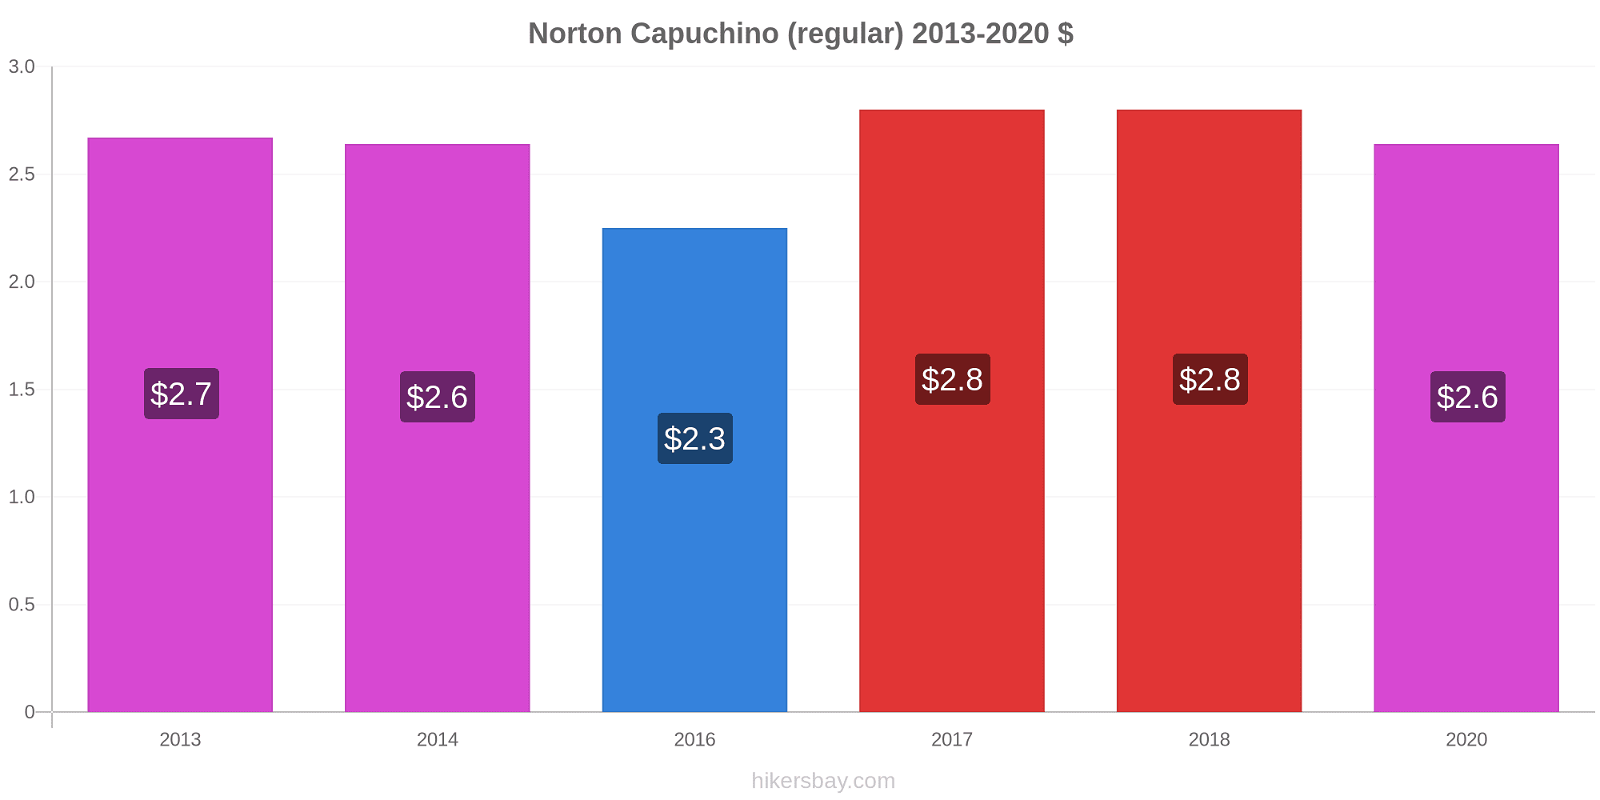 Norton cambios de precios Capuchino (regular) hikersbay.com